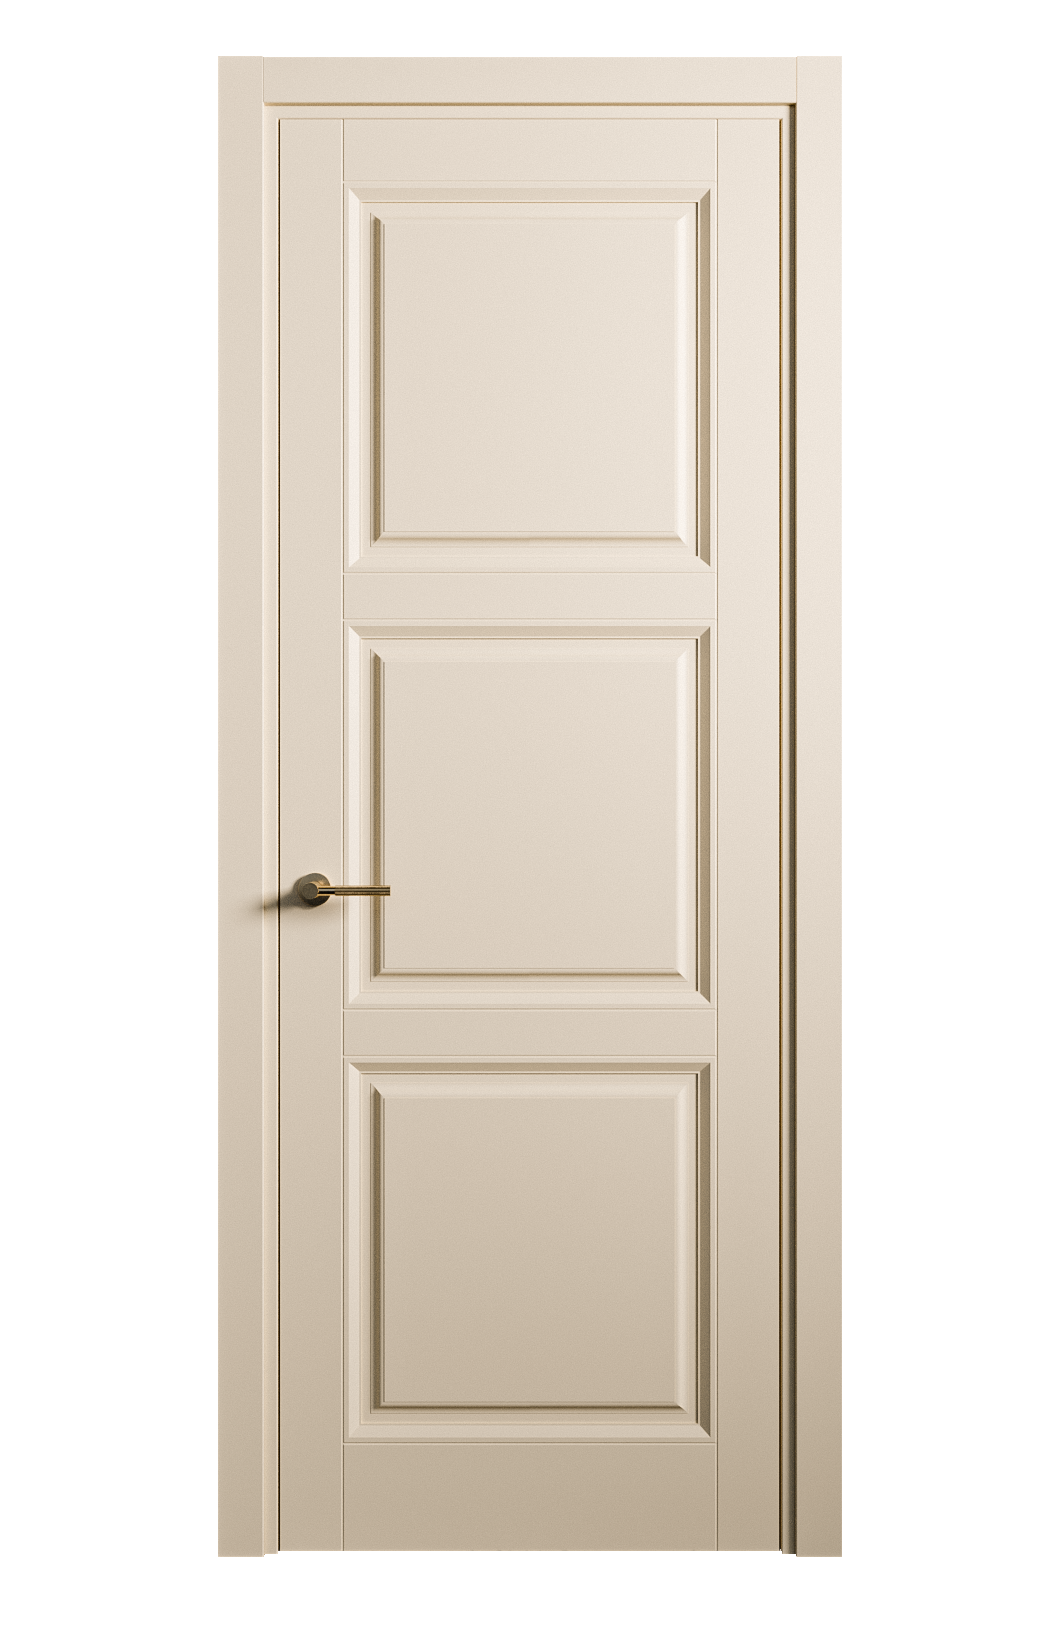 Межкомнатная дверь Venezia-3 глухая эмаль ral 1015 25751